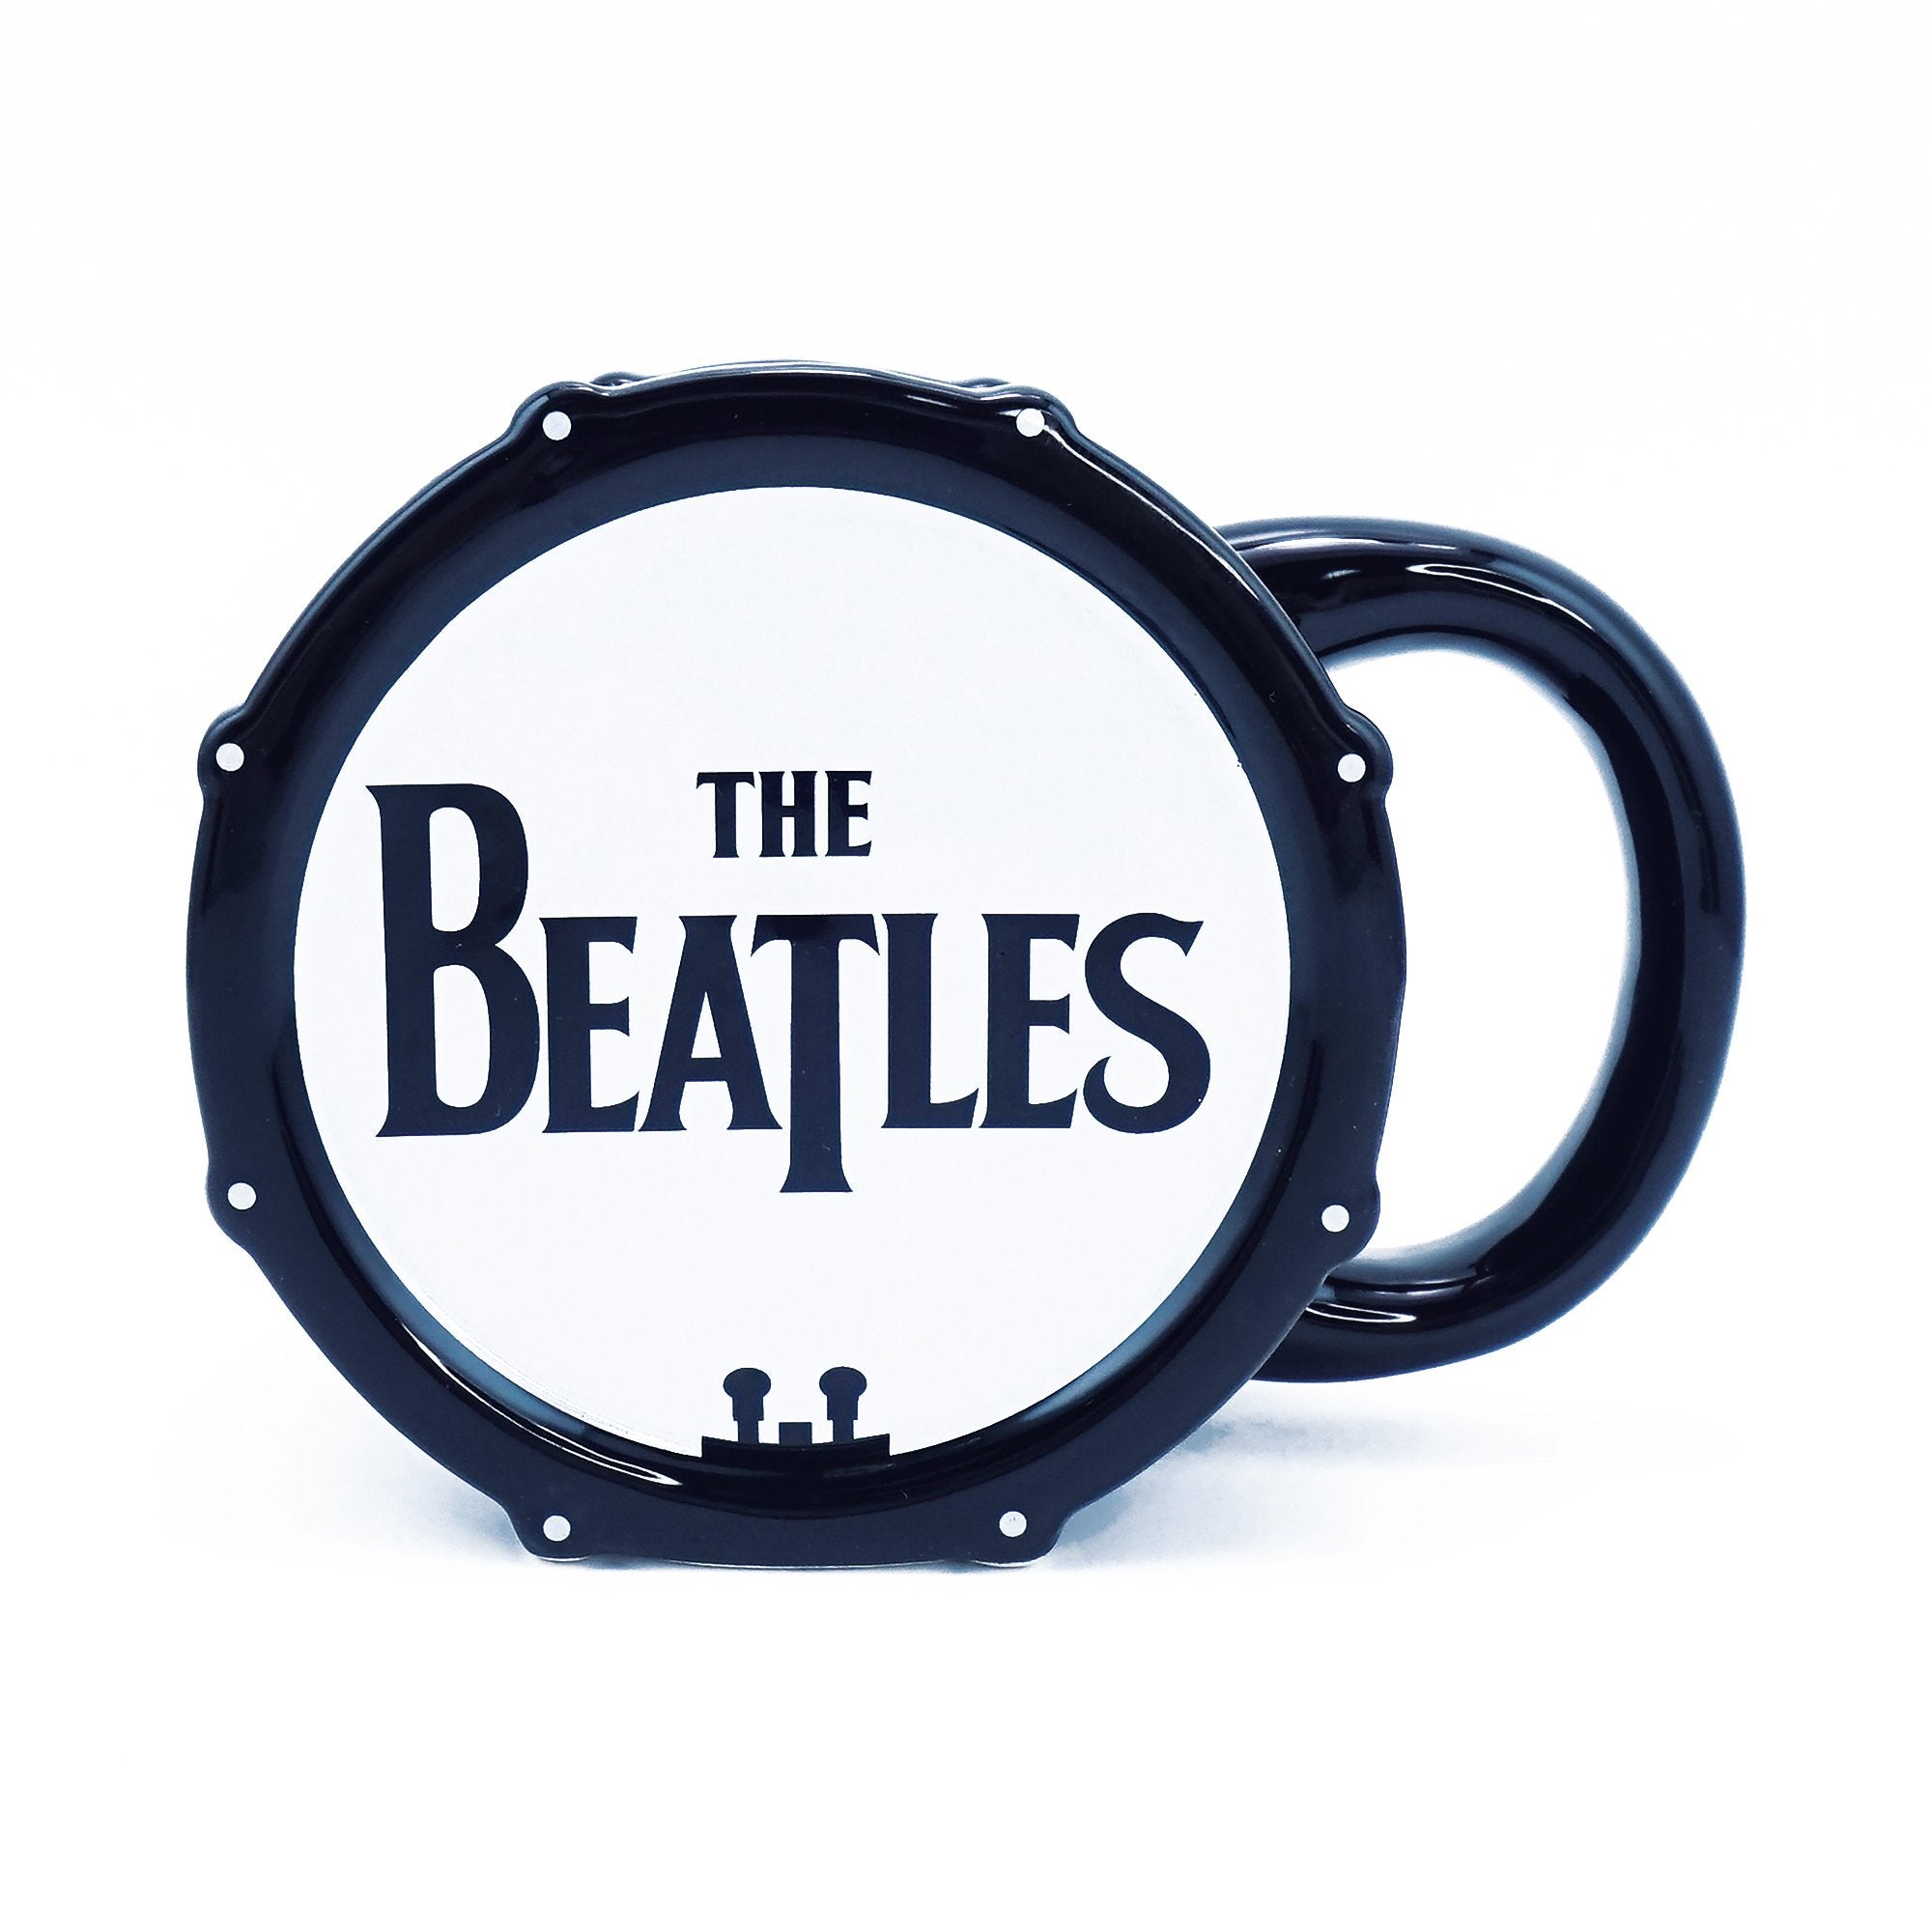 Mug Shaped Boxed (250ml) - The Beatles (Logo)